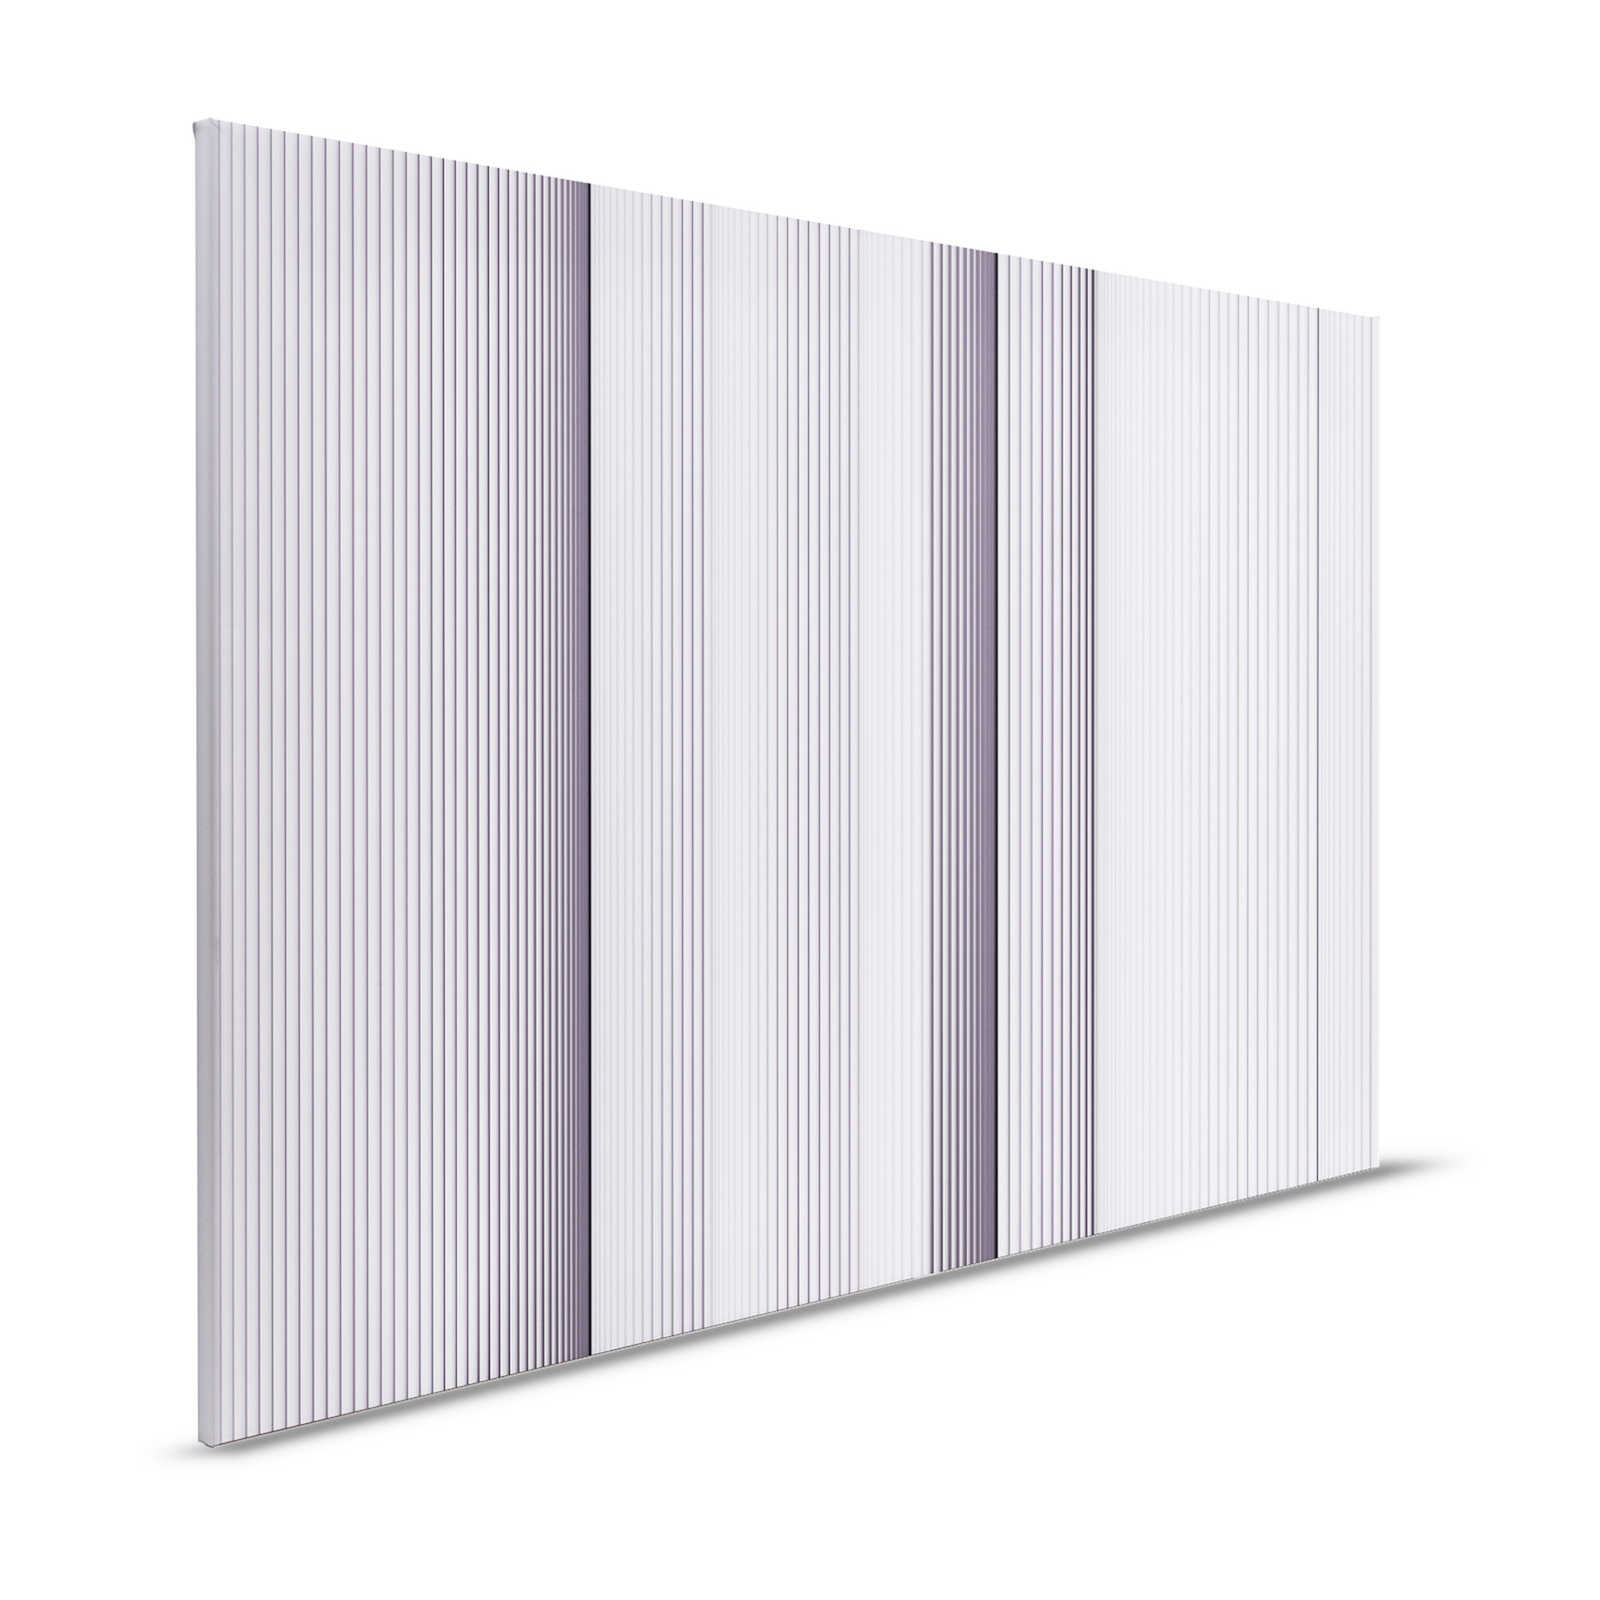 Magic Wall 1 - Lienzo a rayas efecto ilusión 3D, morado y blanco - 1,20 m x 0,80 m
